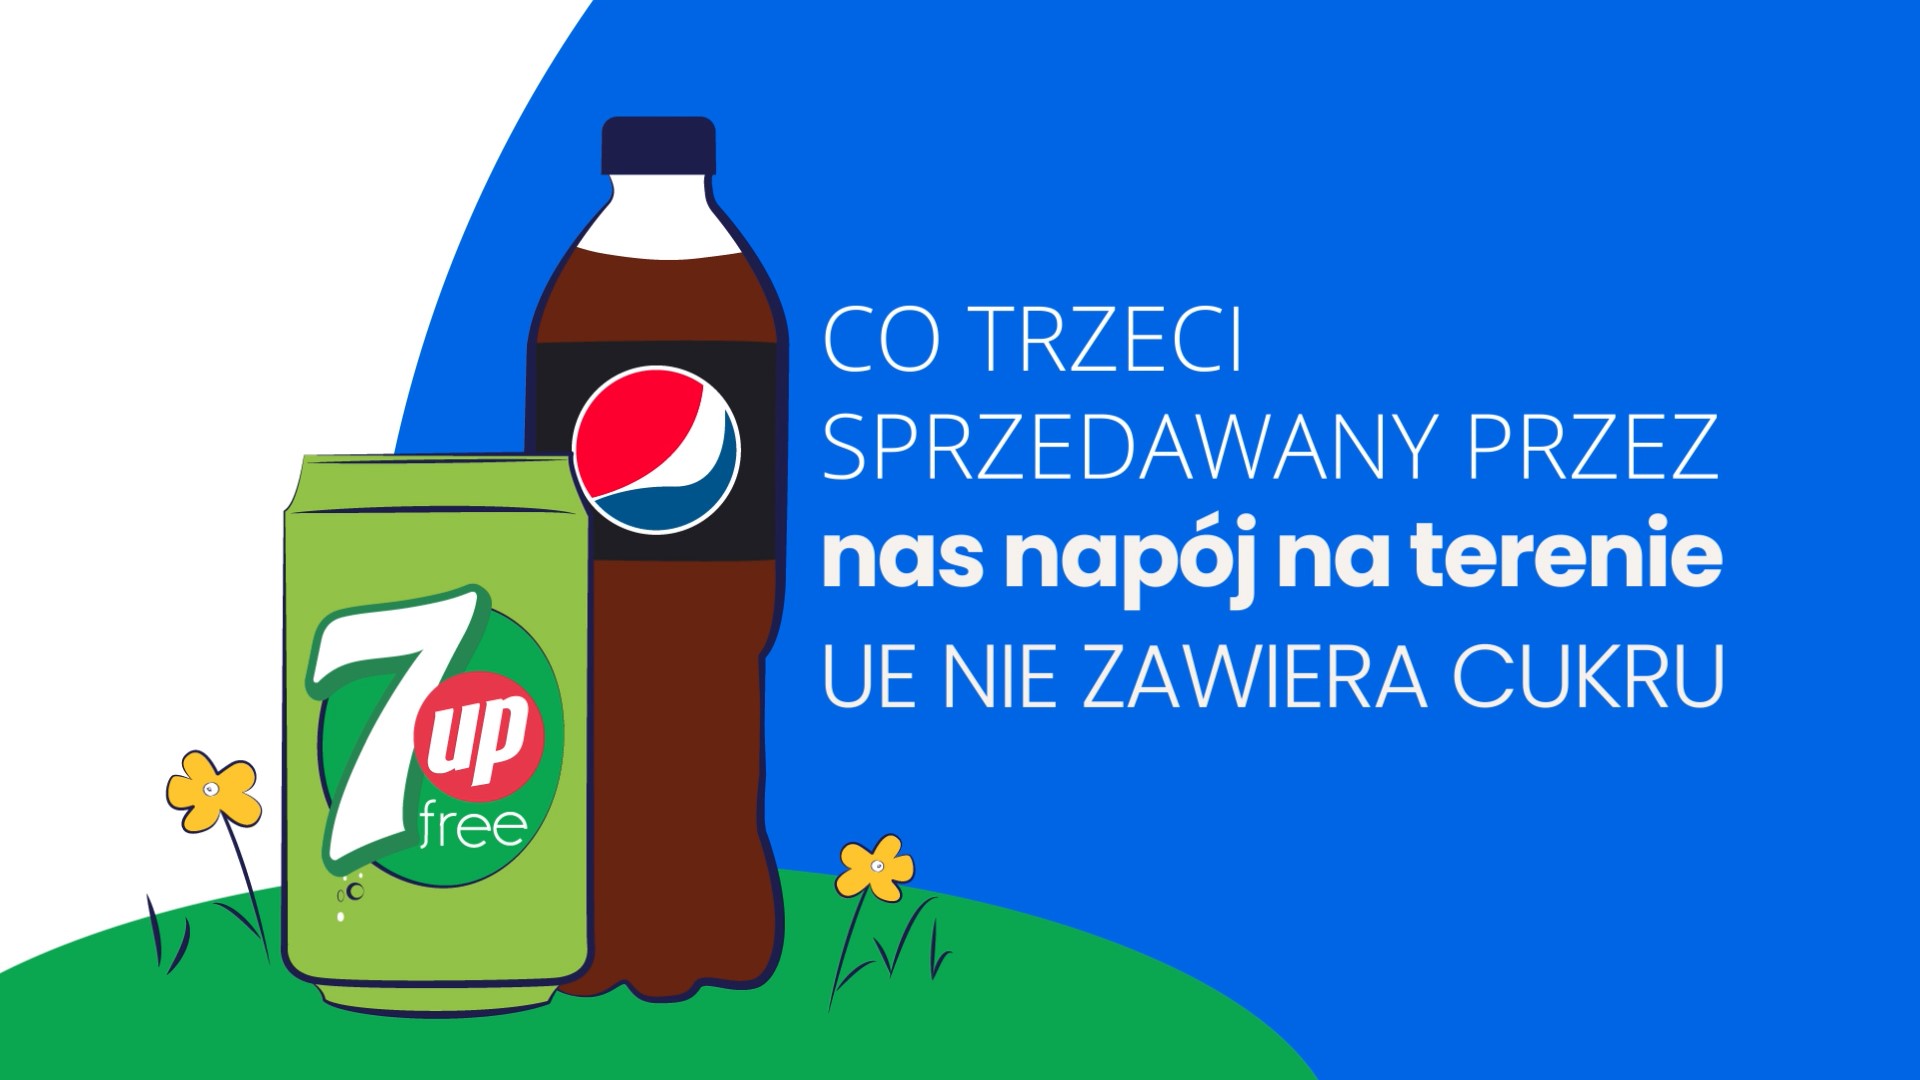 PepsiCo poszerza ofertę zdrowszych przekąsek i napojów